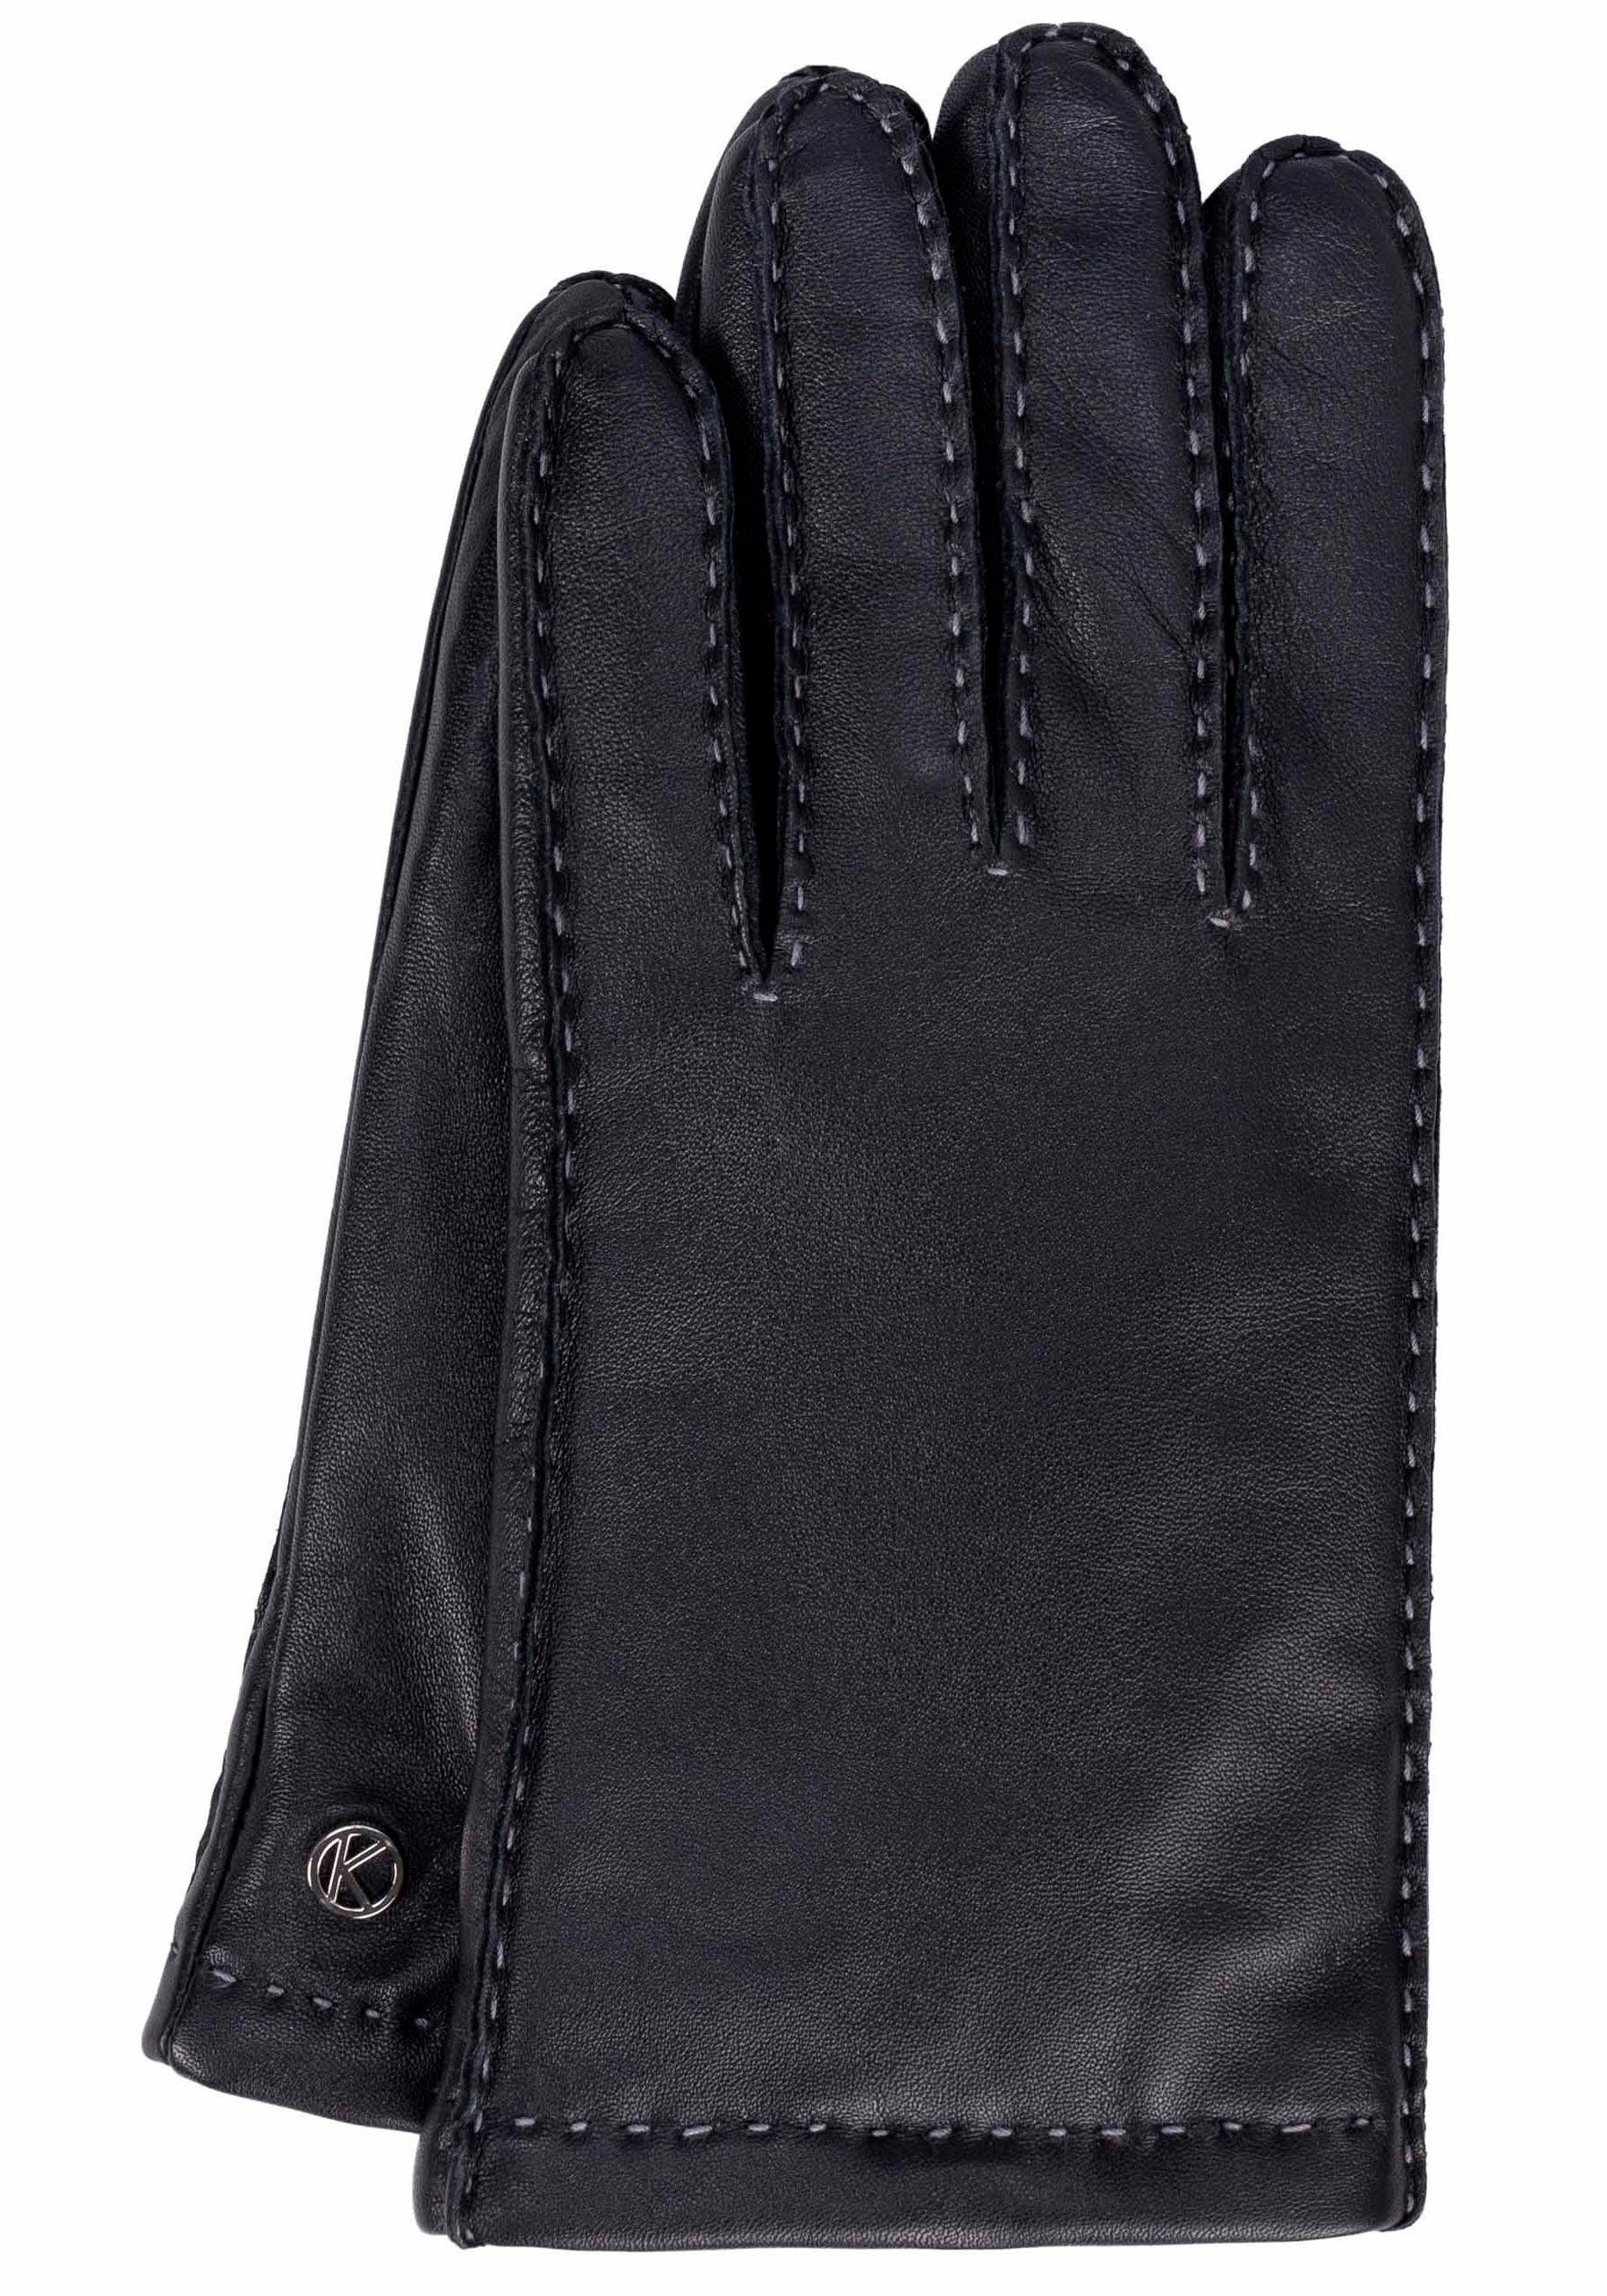 KESSLER Lederhandschuhe Smart- Oberflächen Touchfunktion Millie für black